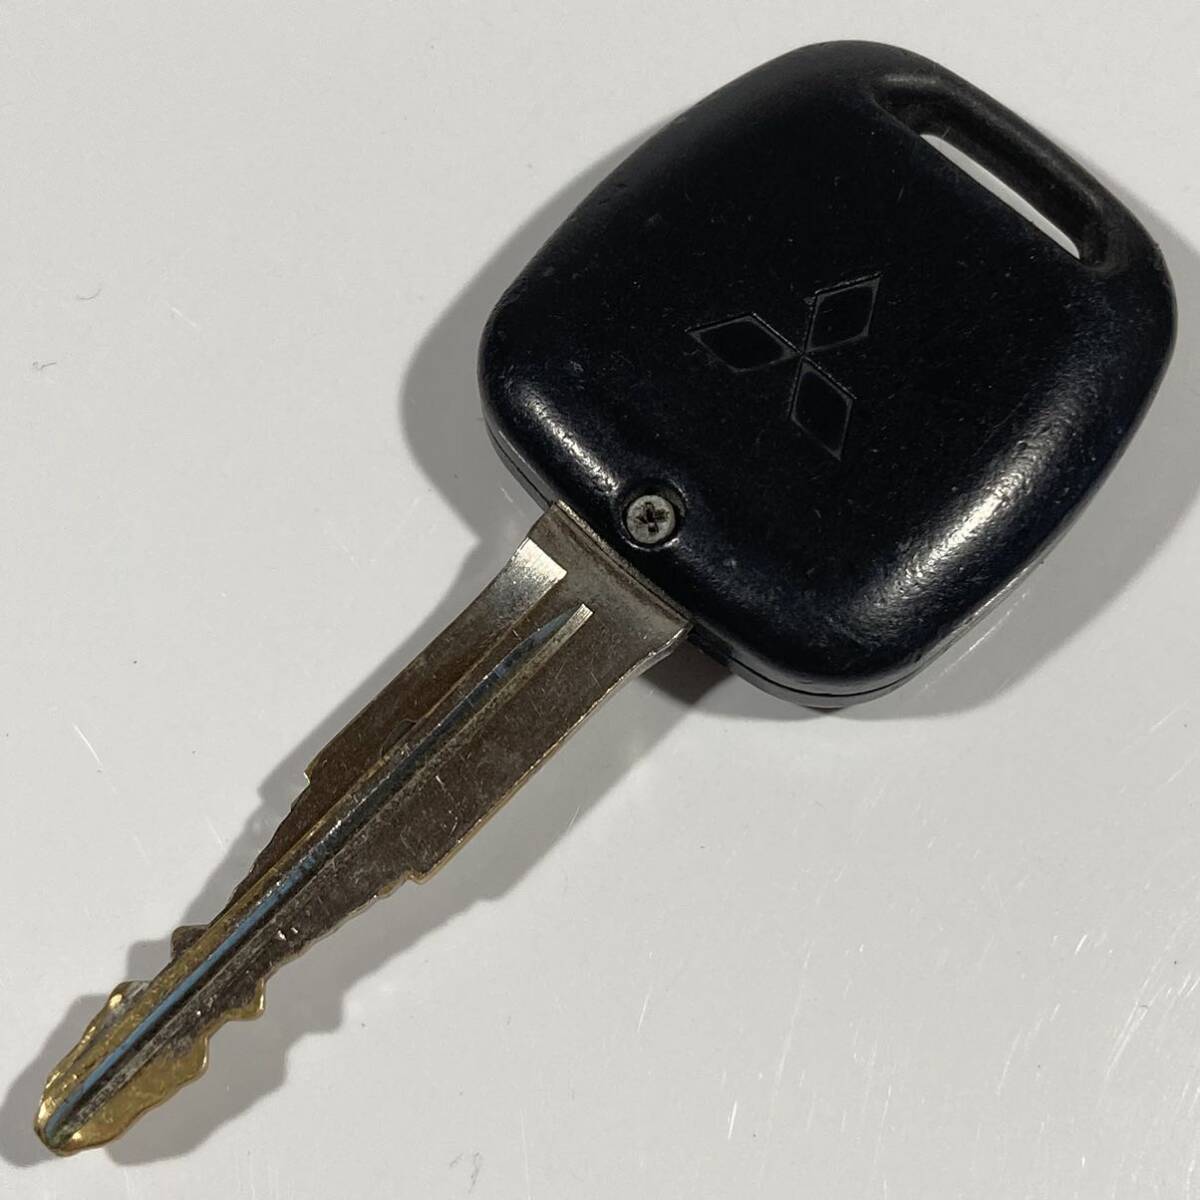  включая доставку MITSUBISHI Mitsubishi оригинальный EK Wagon Town Box Lancer G8D-534M-A 2 кнопка "умный" ключ дистанционный ключ дистанционный пульт ключ MTI066E